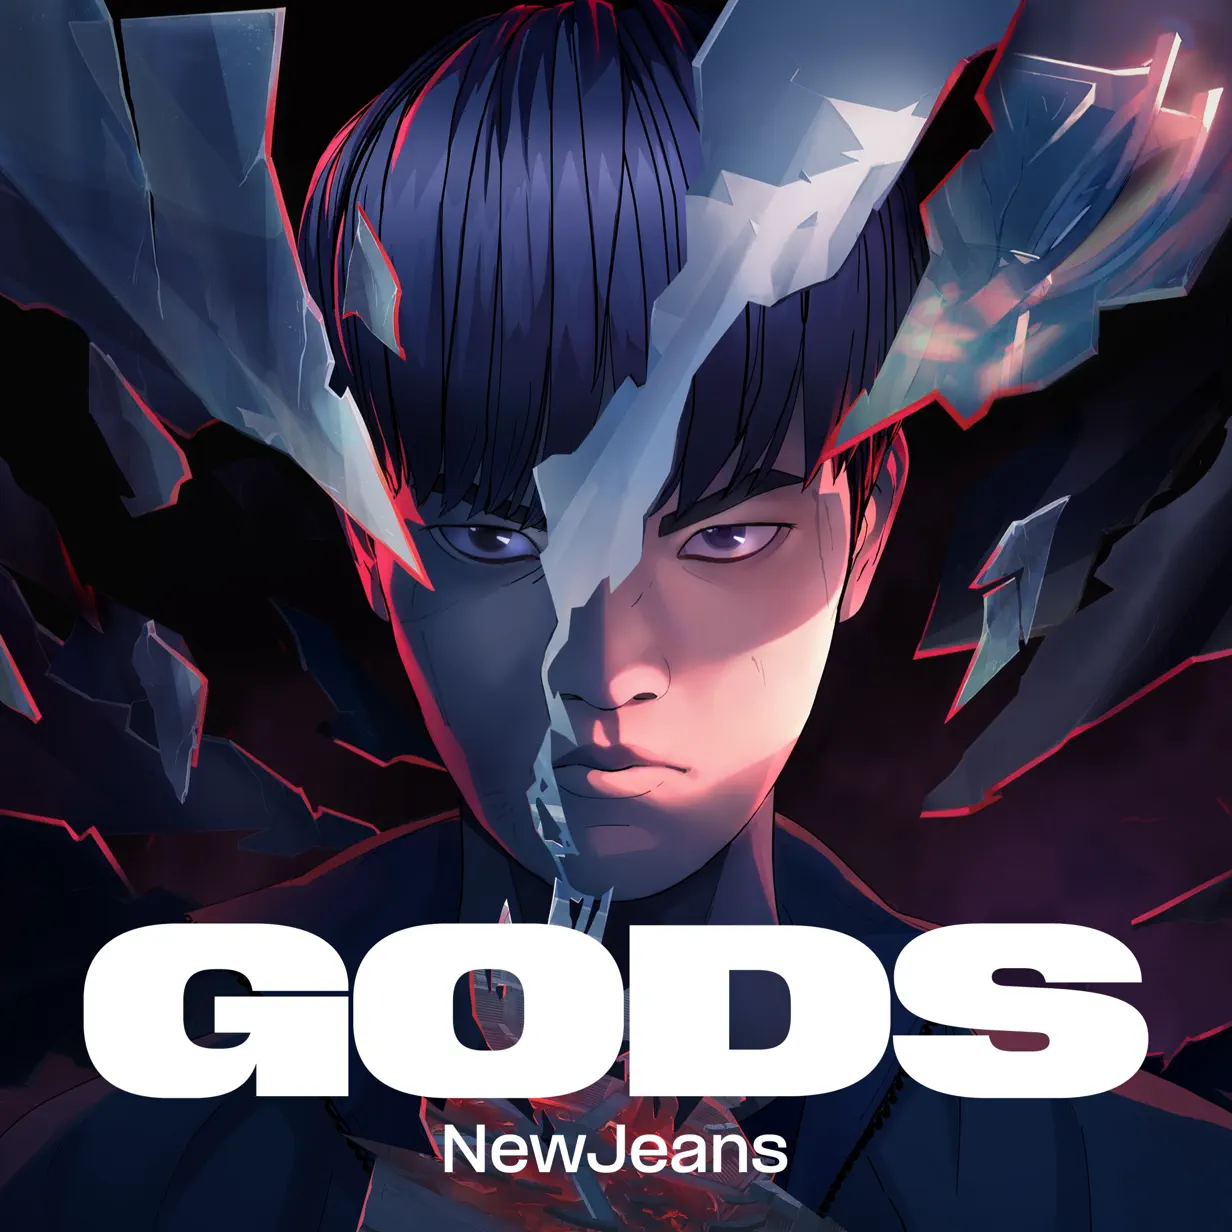 League of Legends & NewJeans (뉴진스) “Gods” Download MP3